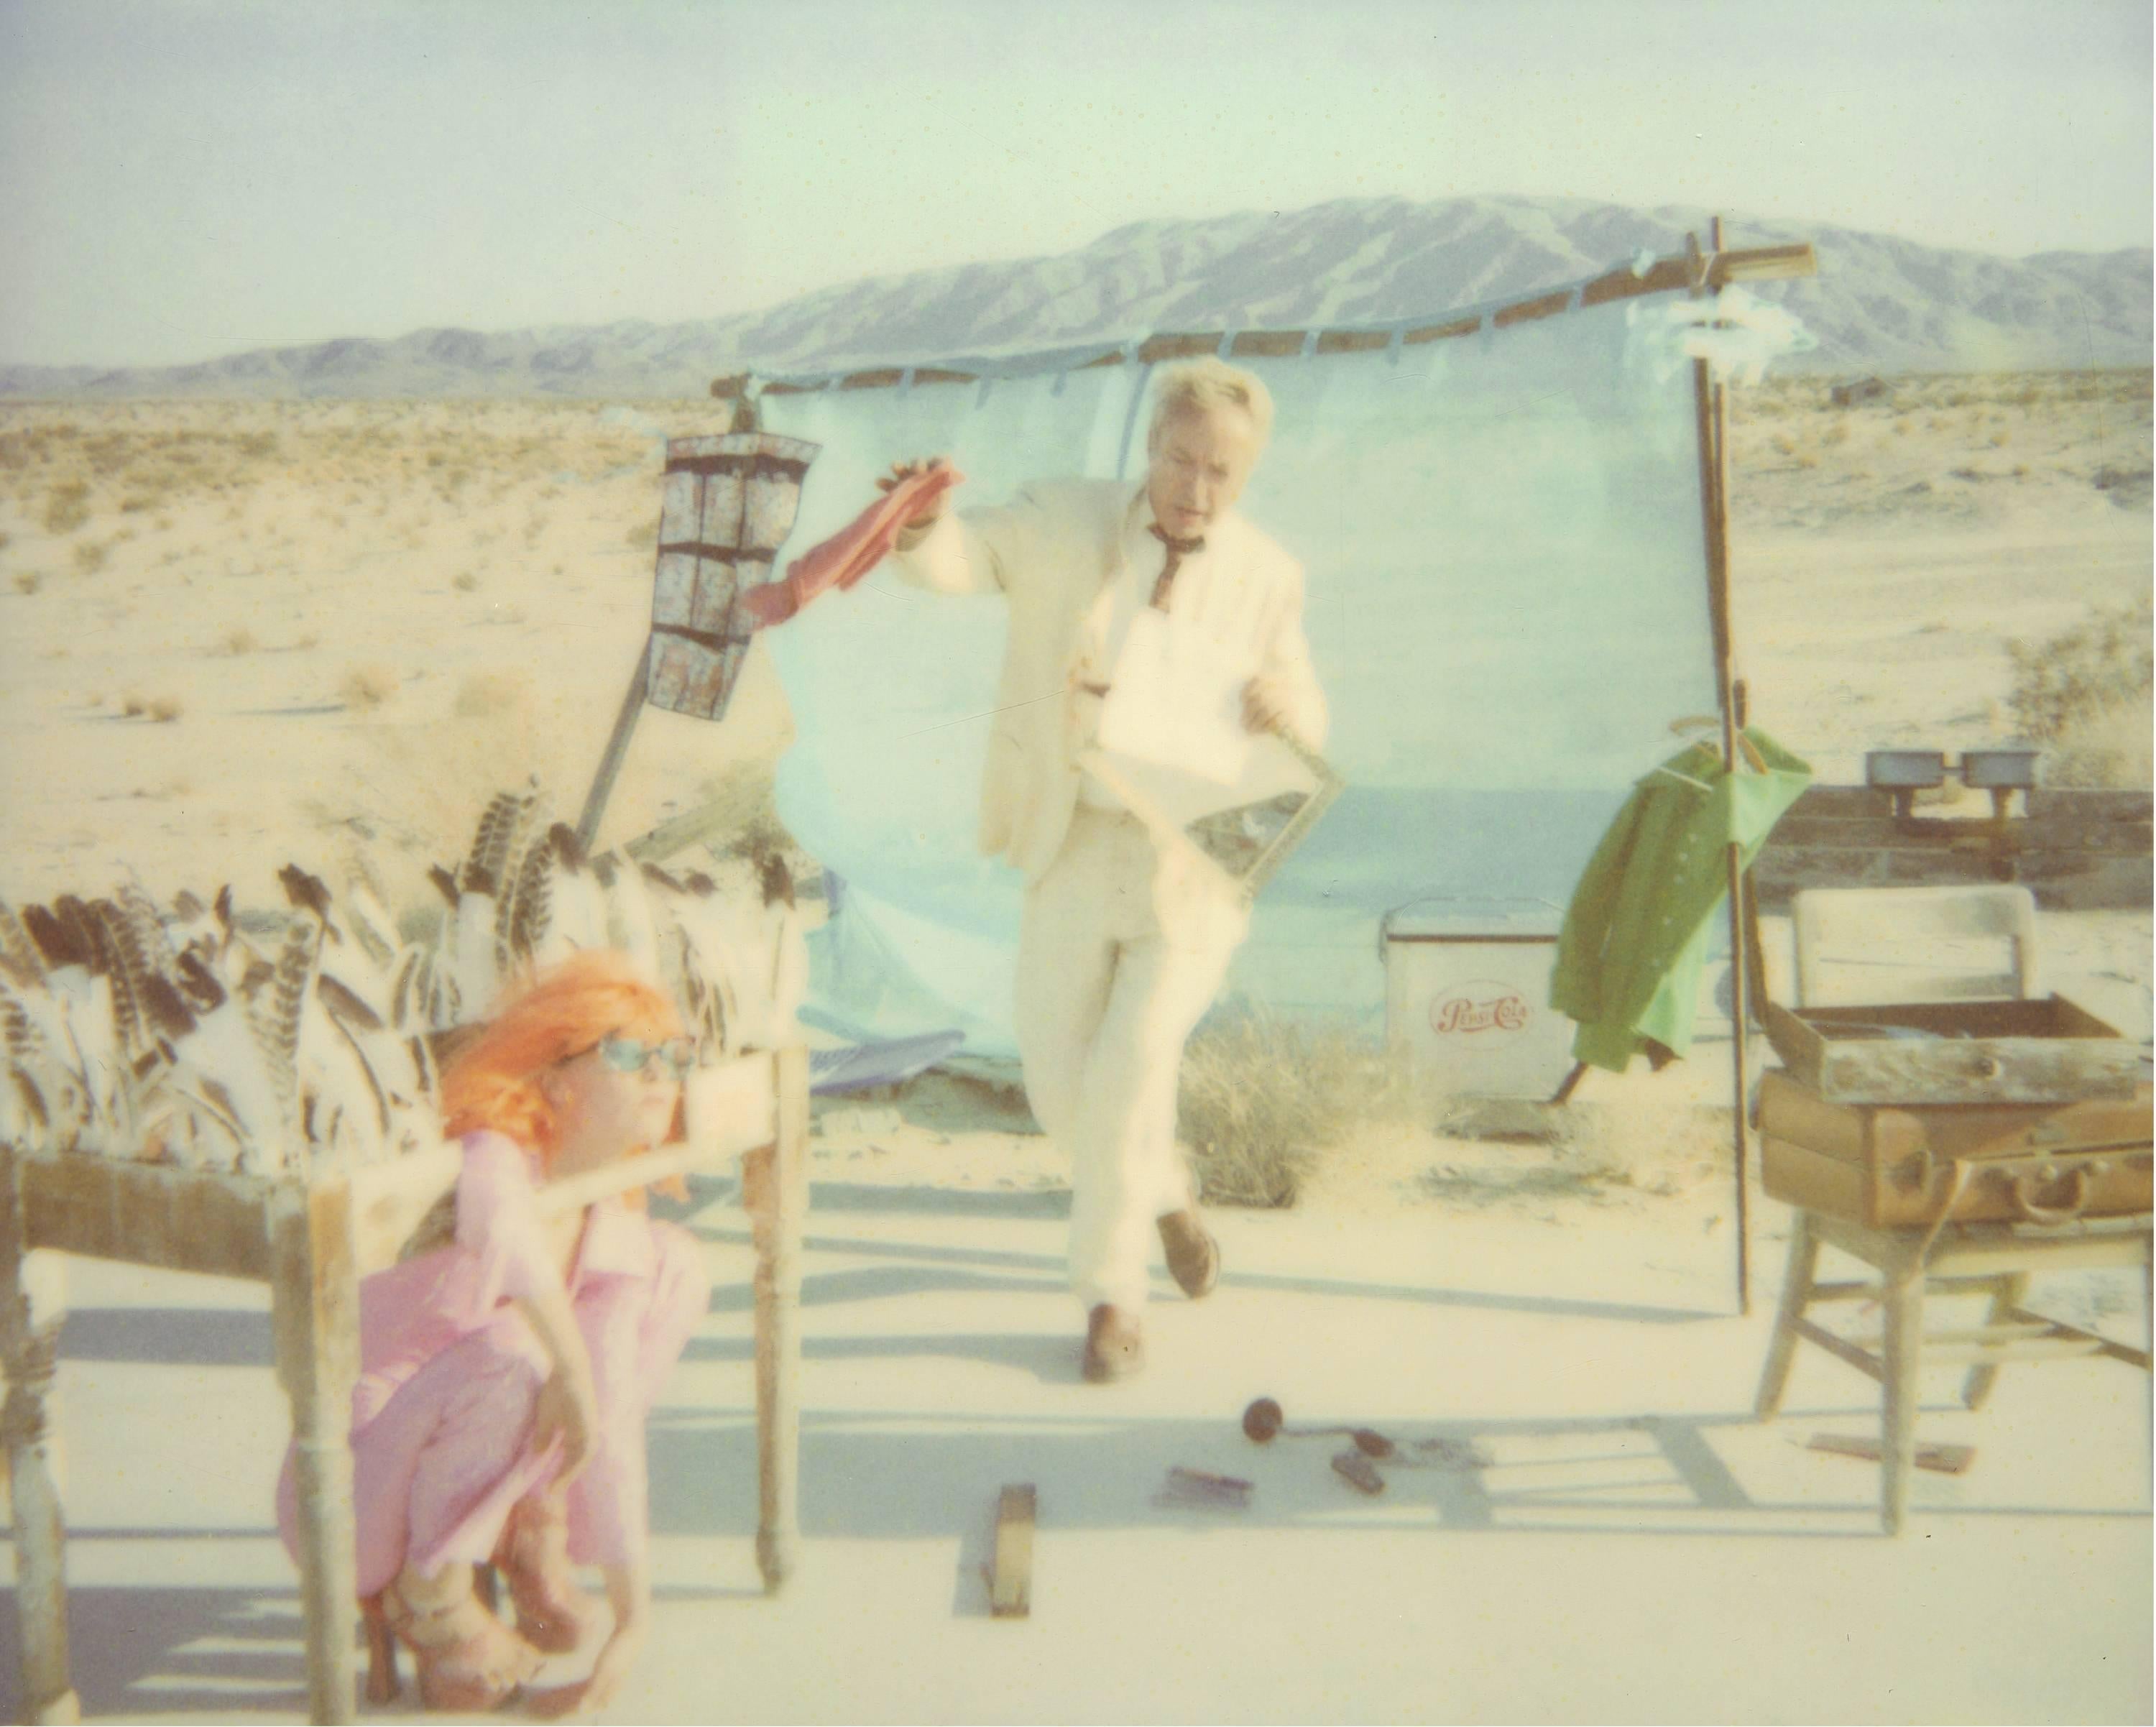 Stefanie Schneider Color Photograph - Spiegelbild (Stage of Consciosness), analog, 125x154cm  featuring Udo Kier